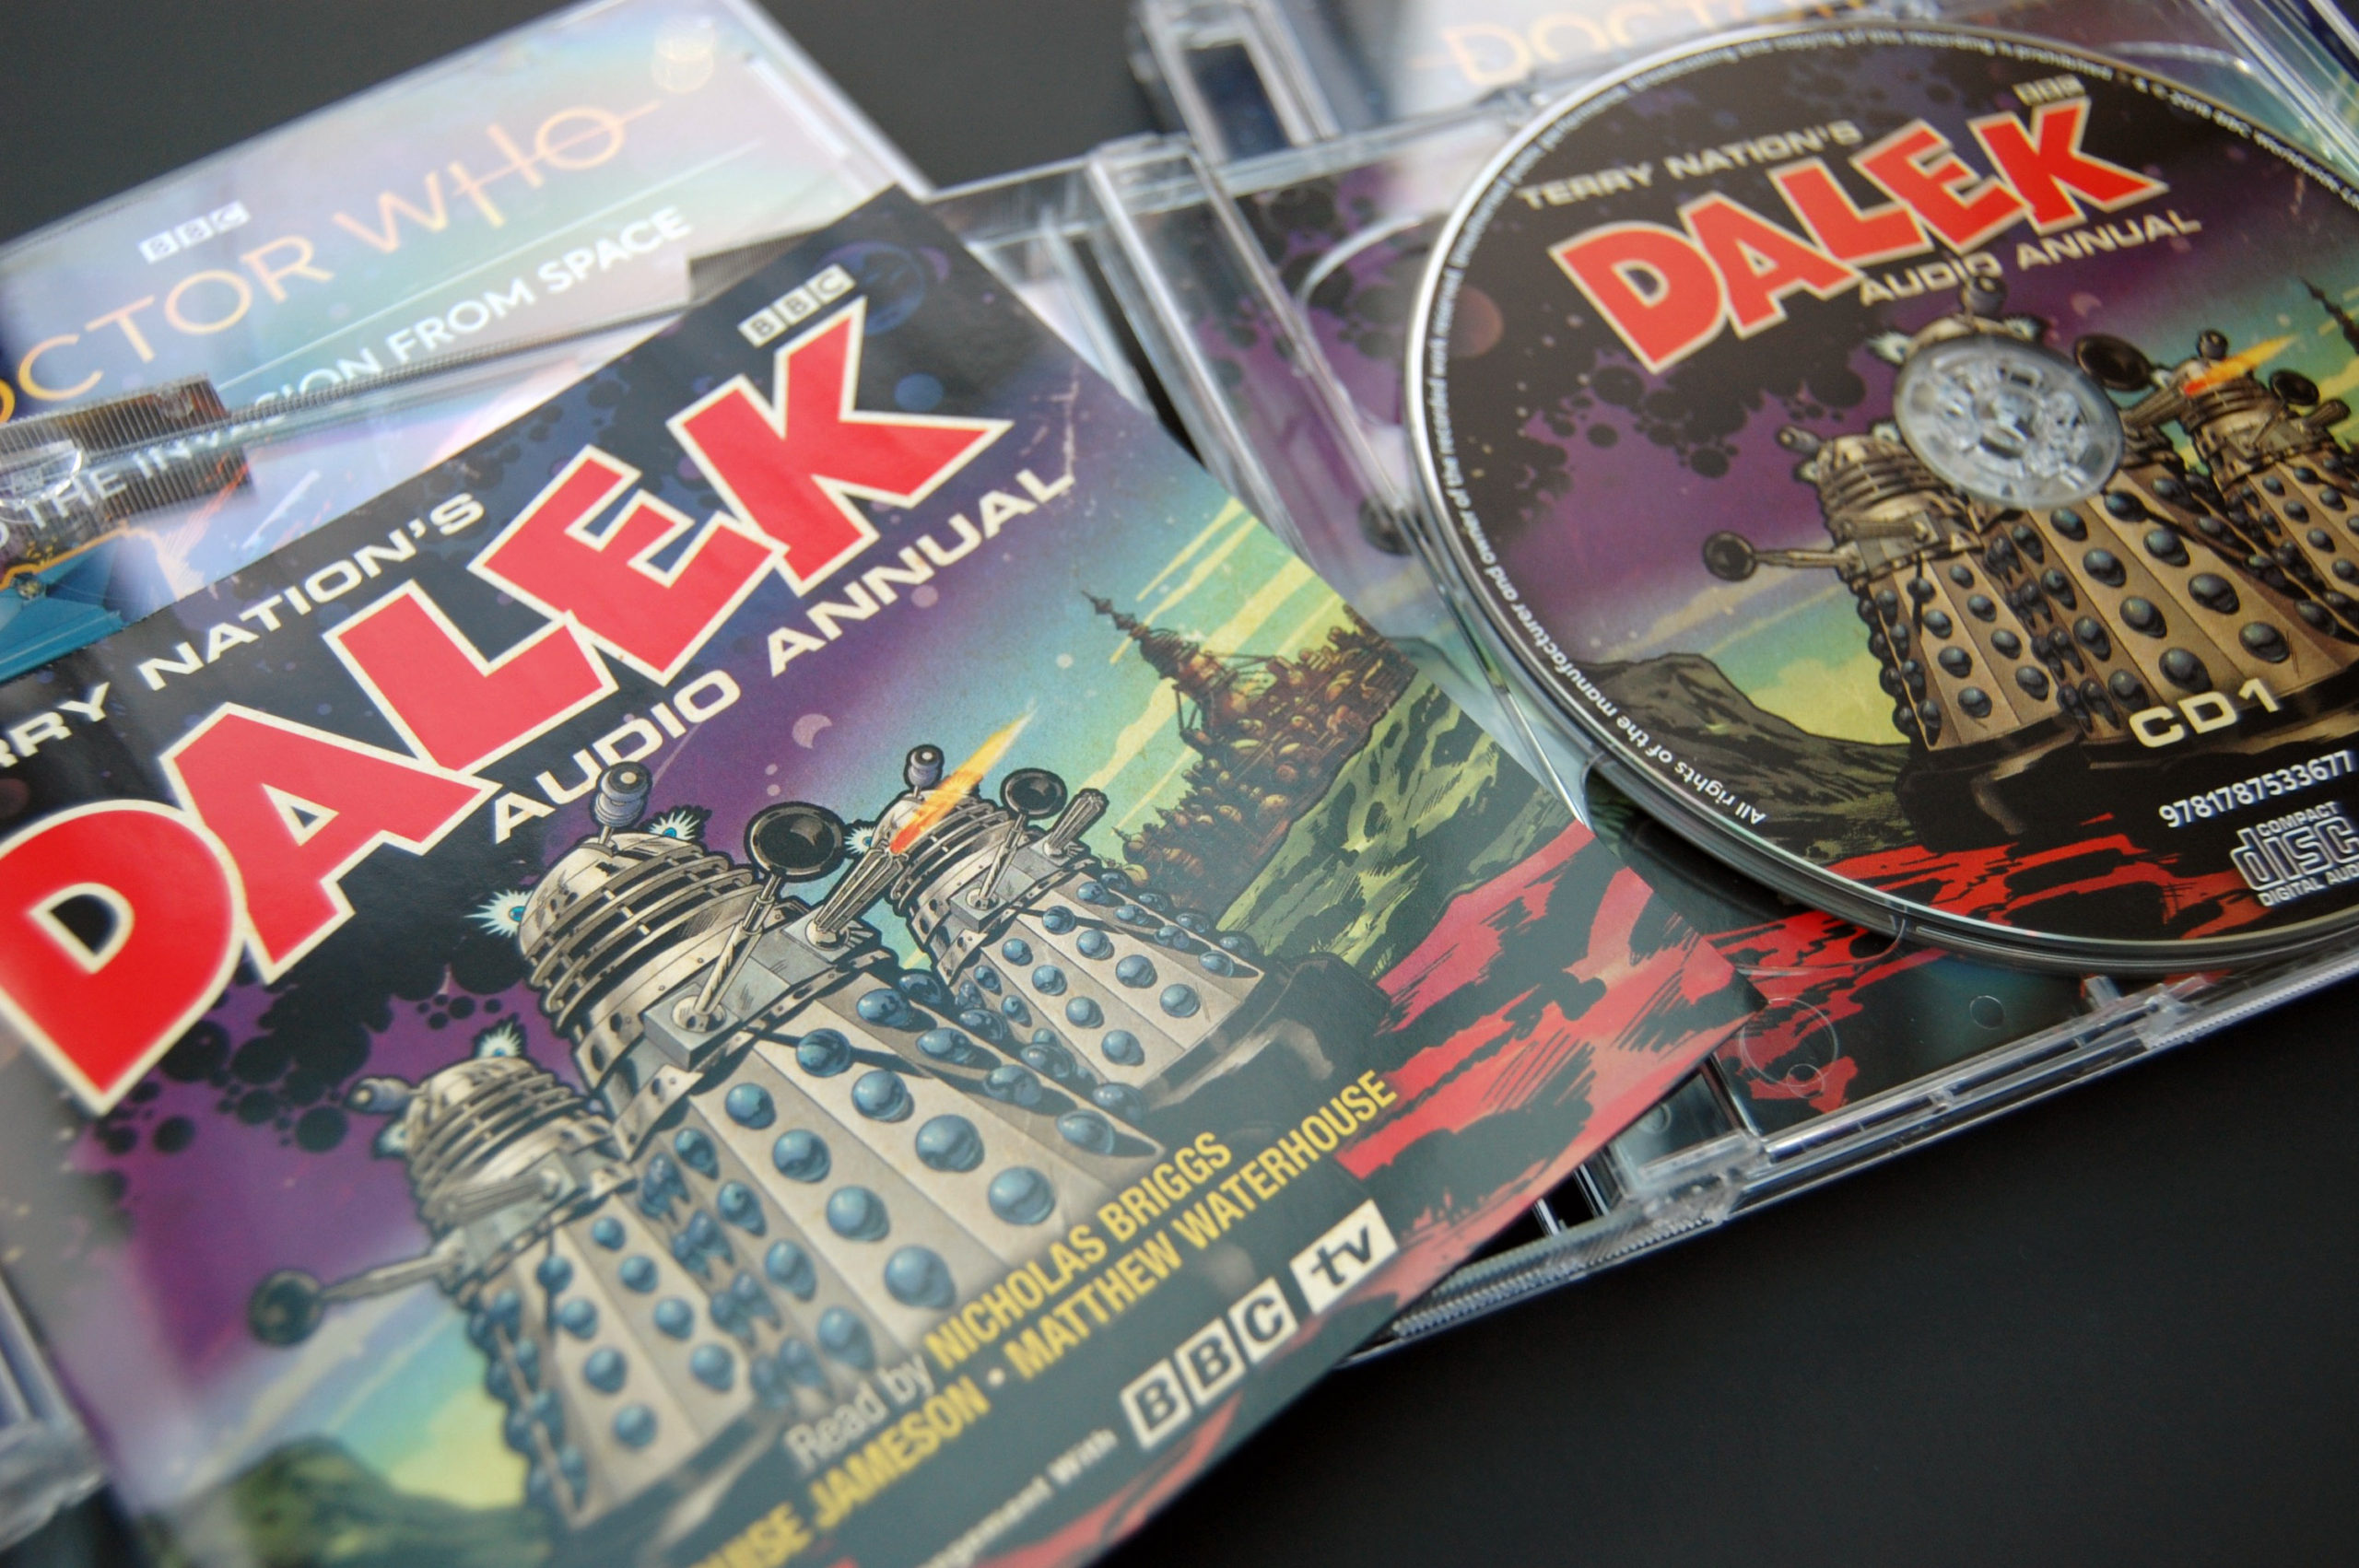 Dalek audio CD packaging